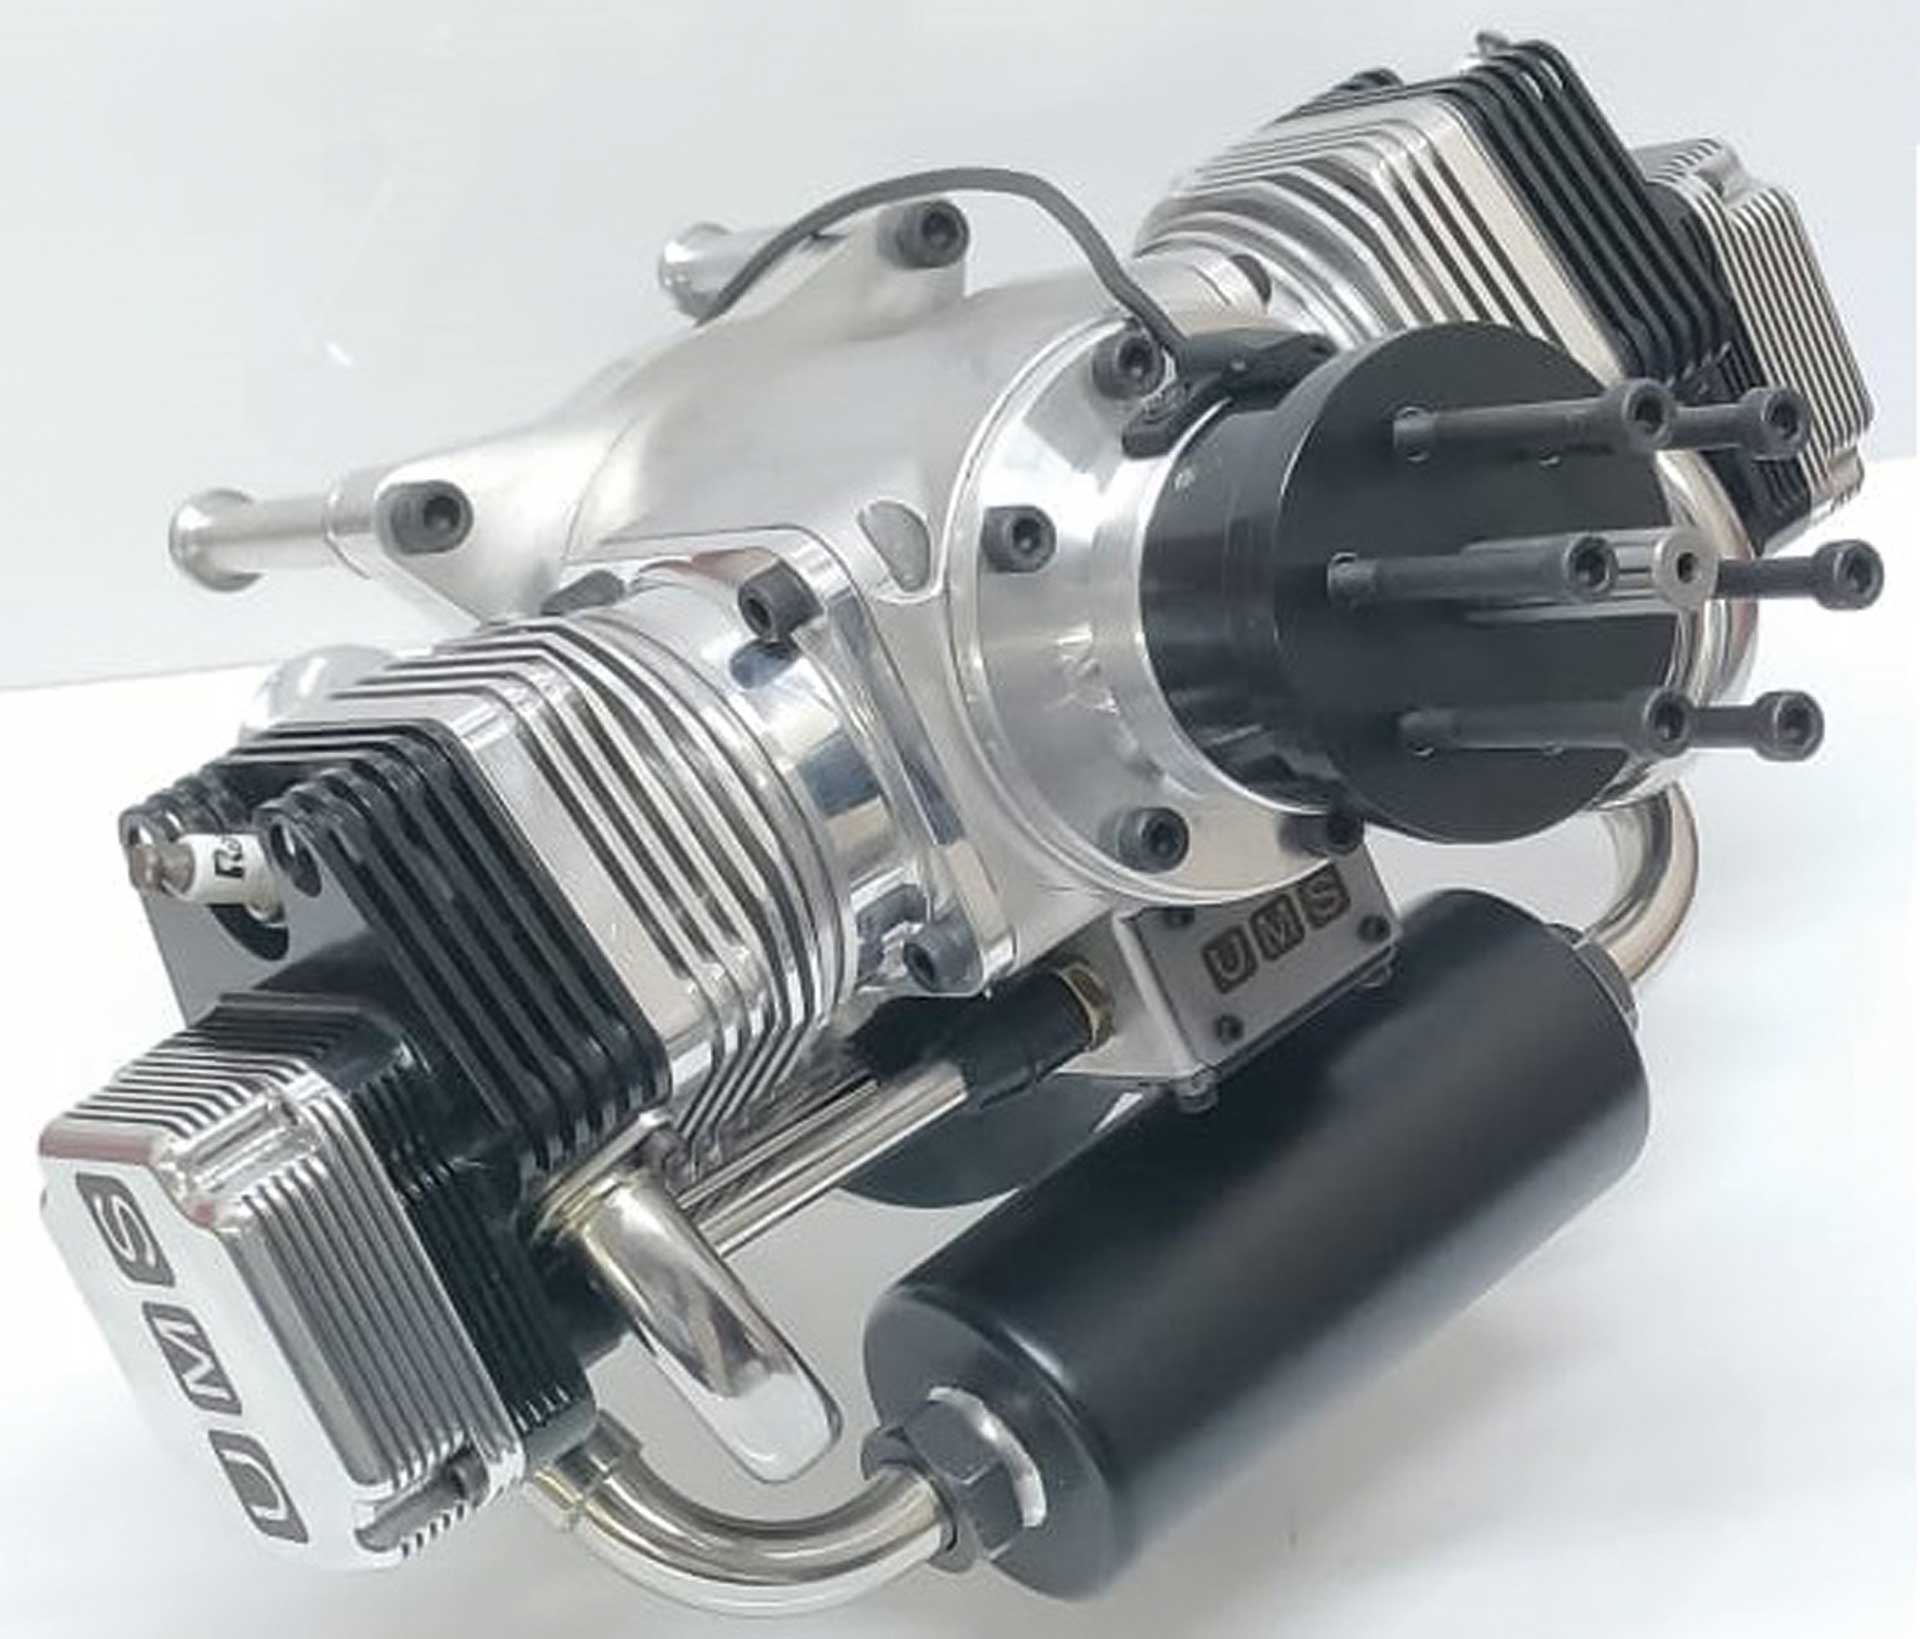 UMS Two cylinder boxer engine, 4 stroke, 140ccm